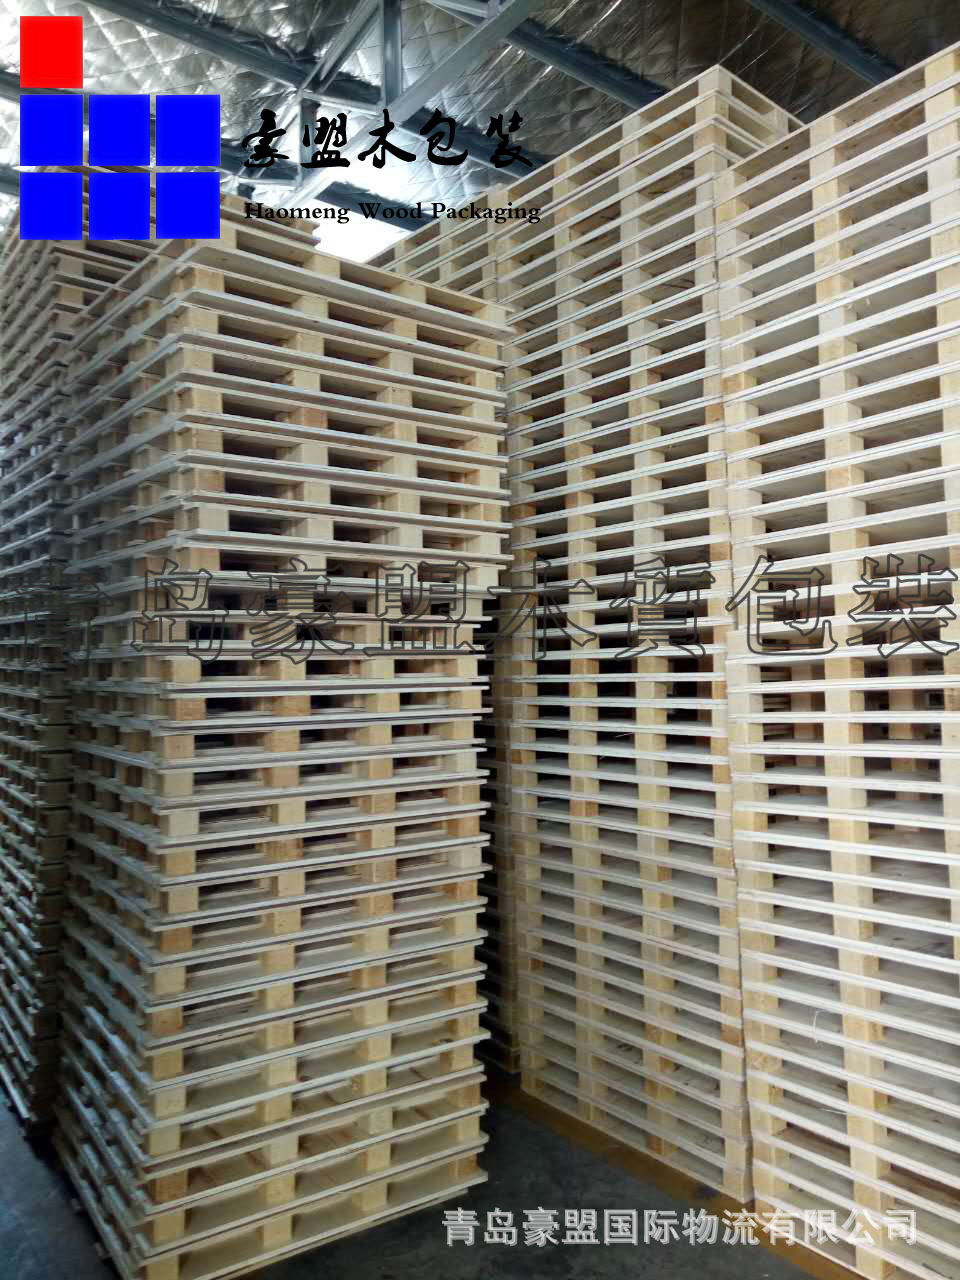 厂家供应环保仓储运输木托盘免熏蒸胶合板材质可出口价格便宜示例图9